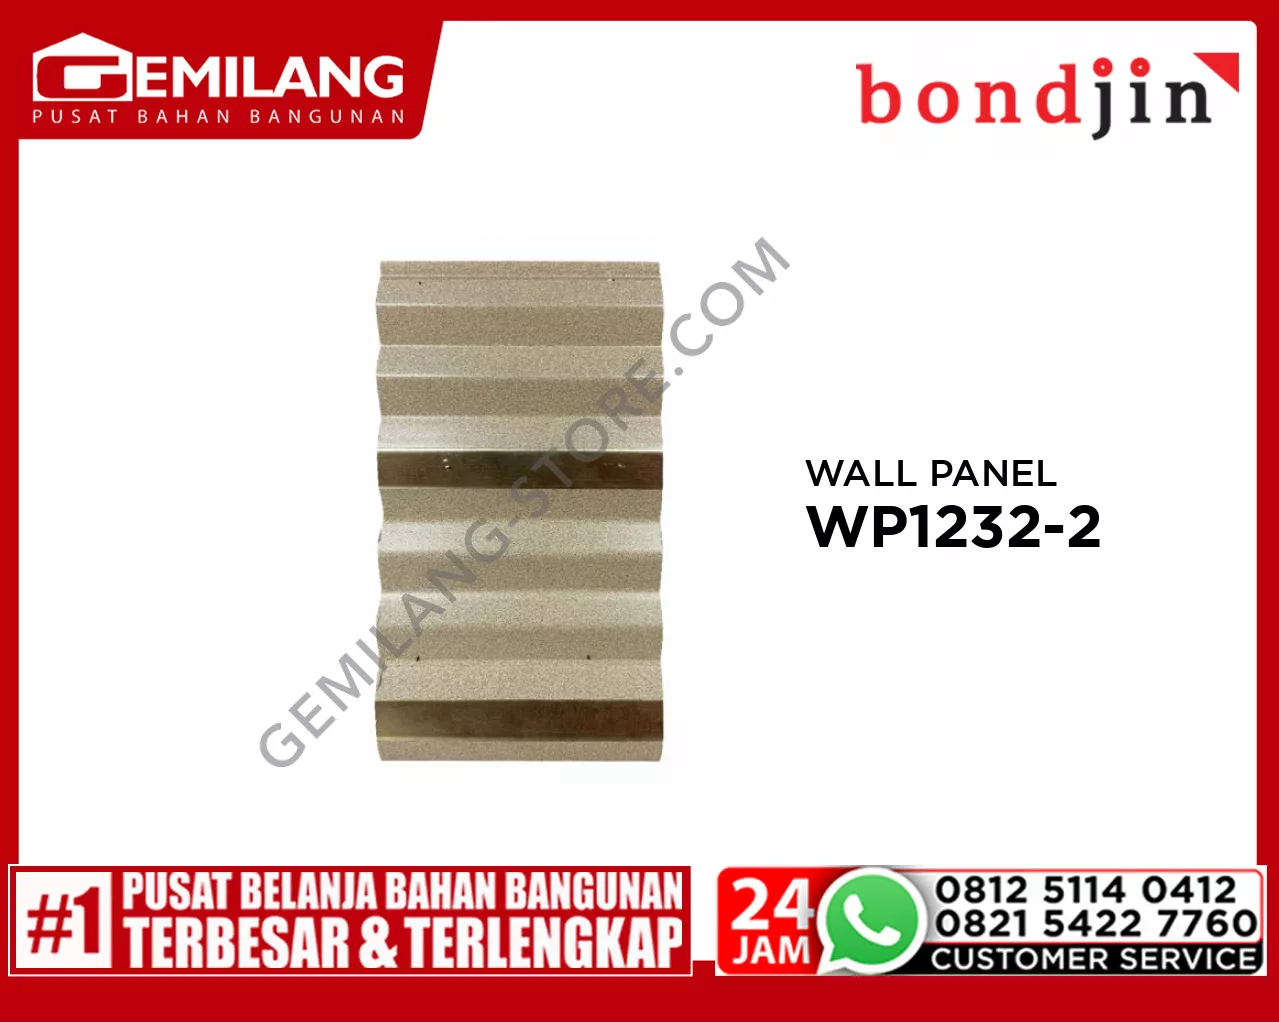 BONDJIN WALL PANEL WP1232-2 (195 x 3000 x 12T)